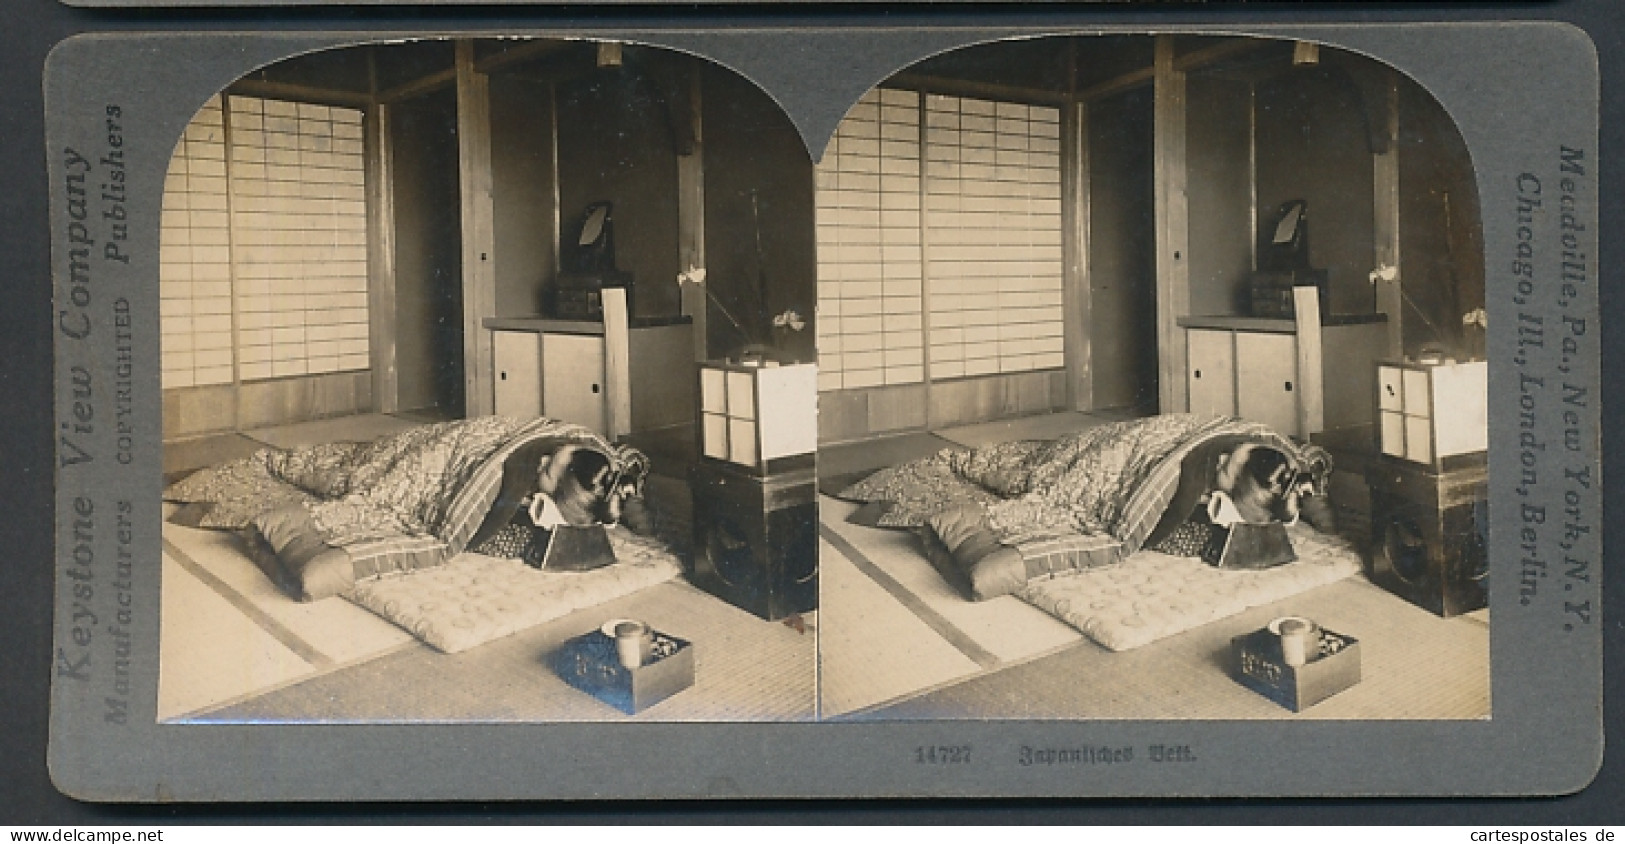 Stereo-Fotografie Keystone View Comp. Meadville / PA., Japanerin In Einem Typischen Japinischen Bett  - Photos Stéréoscopiques